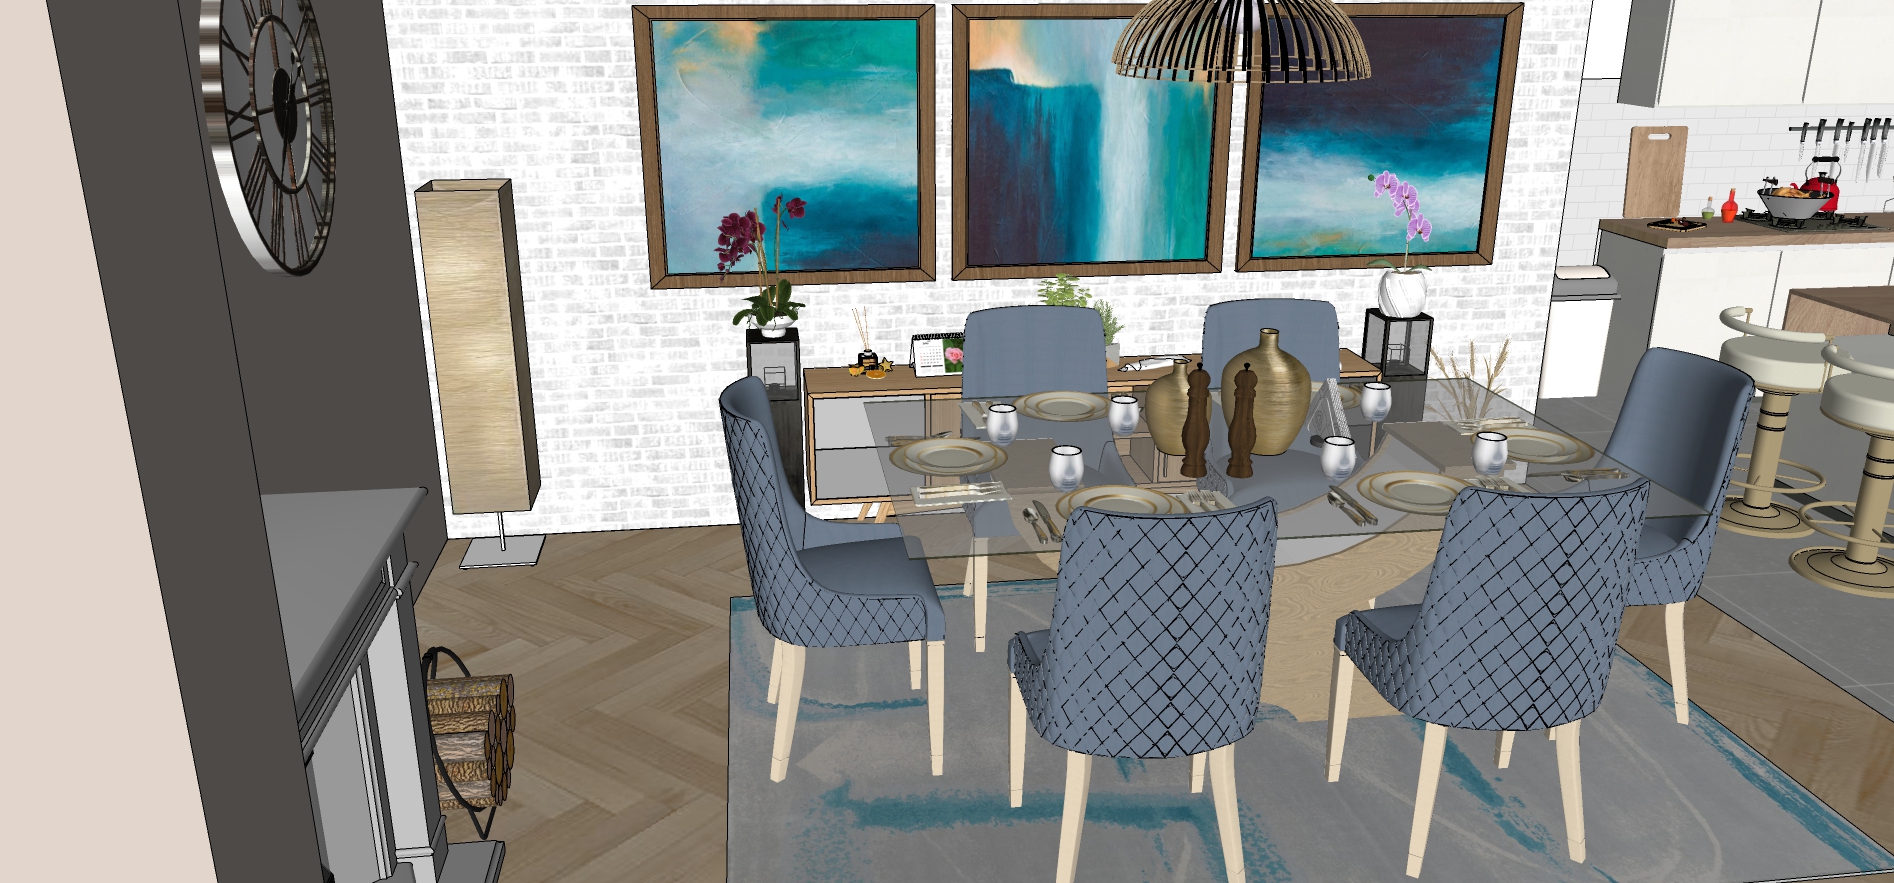 Blagovaonica 1 : Blagovaonica povezuje dnevni boravak i kuhinju. U otvorenom prostoru dnevne zone najjednostavniji i najpraktičniji način odvajanja prostora je smještanje blagovaonskog stola i stolica između boravka i kuhinje. Vizualno se razlikuje od ostatka prostora, a to je postignuto dominiranjem plava boja nad neutralnim stilom ostatka interijera. Zlatni detalji kao što su pribor za jelo i pokoja sitna dekoracija lijepo se slažu uz plavu boju. Prirodnu svjetlost dobiva preko dnevnog boravka i kuhinje. Prevladava simetrija i jednostavnost, te skladne kombinacije oblika i nježne nijanse zidova. Rasvijeta je viseća i usmjerena prema površini stola kako bi se dobilo maksimalno osvijetljenje tijekom objeda.      
